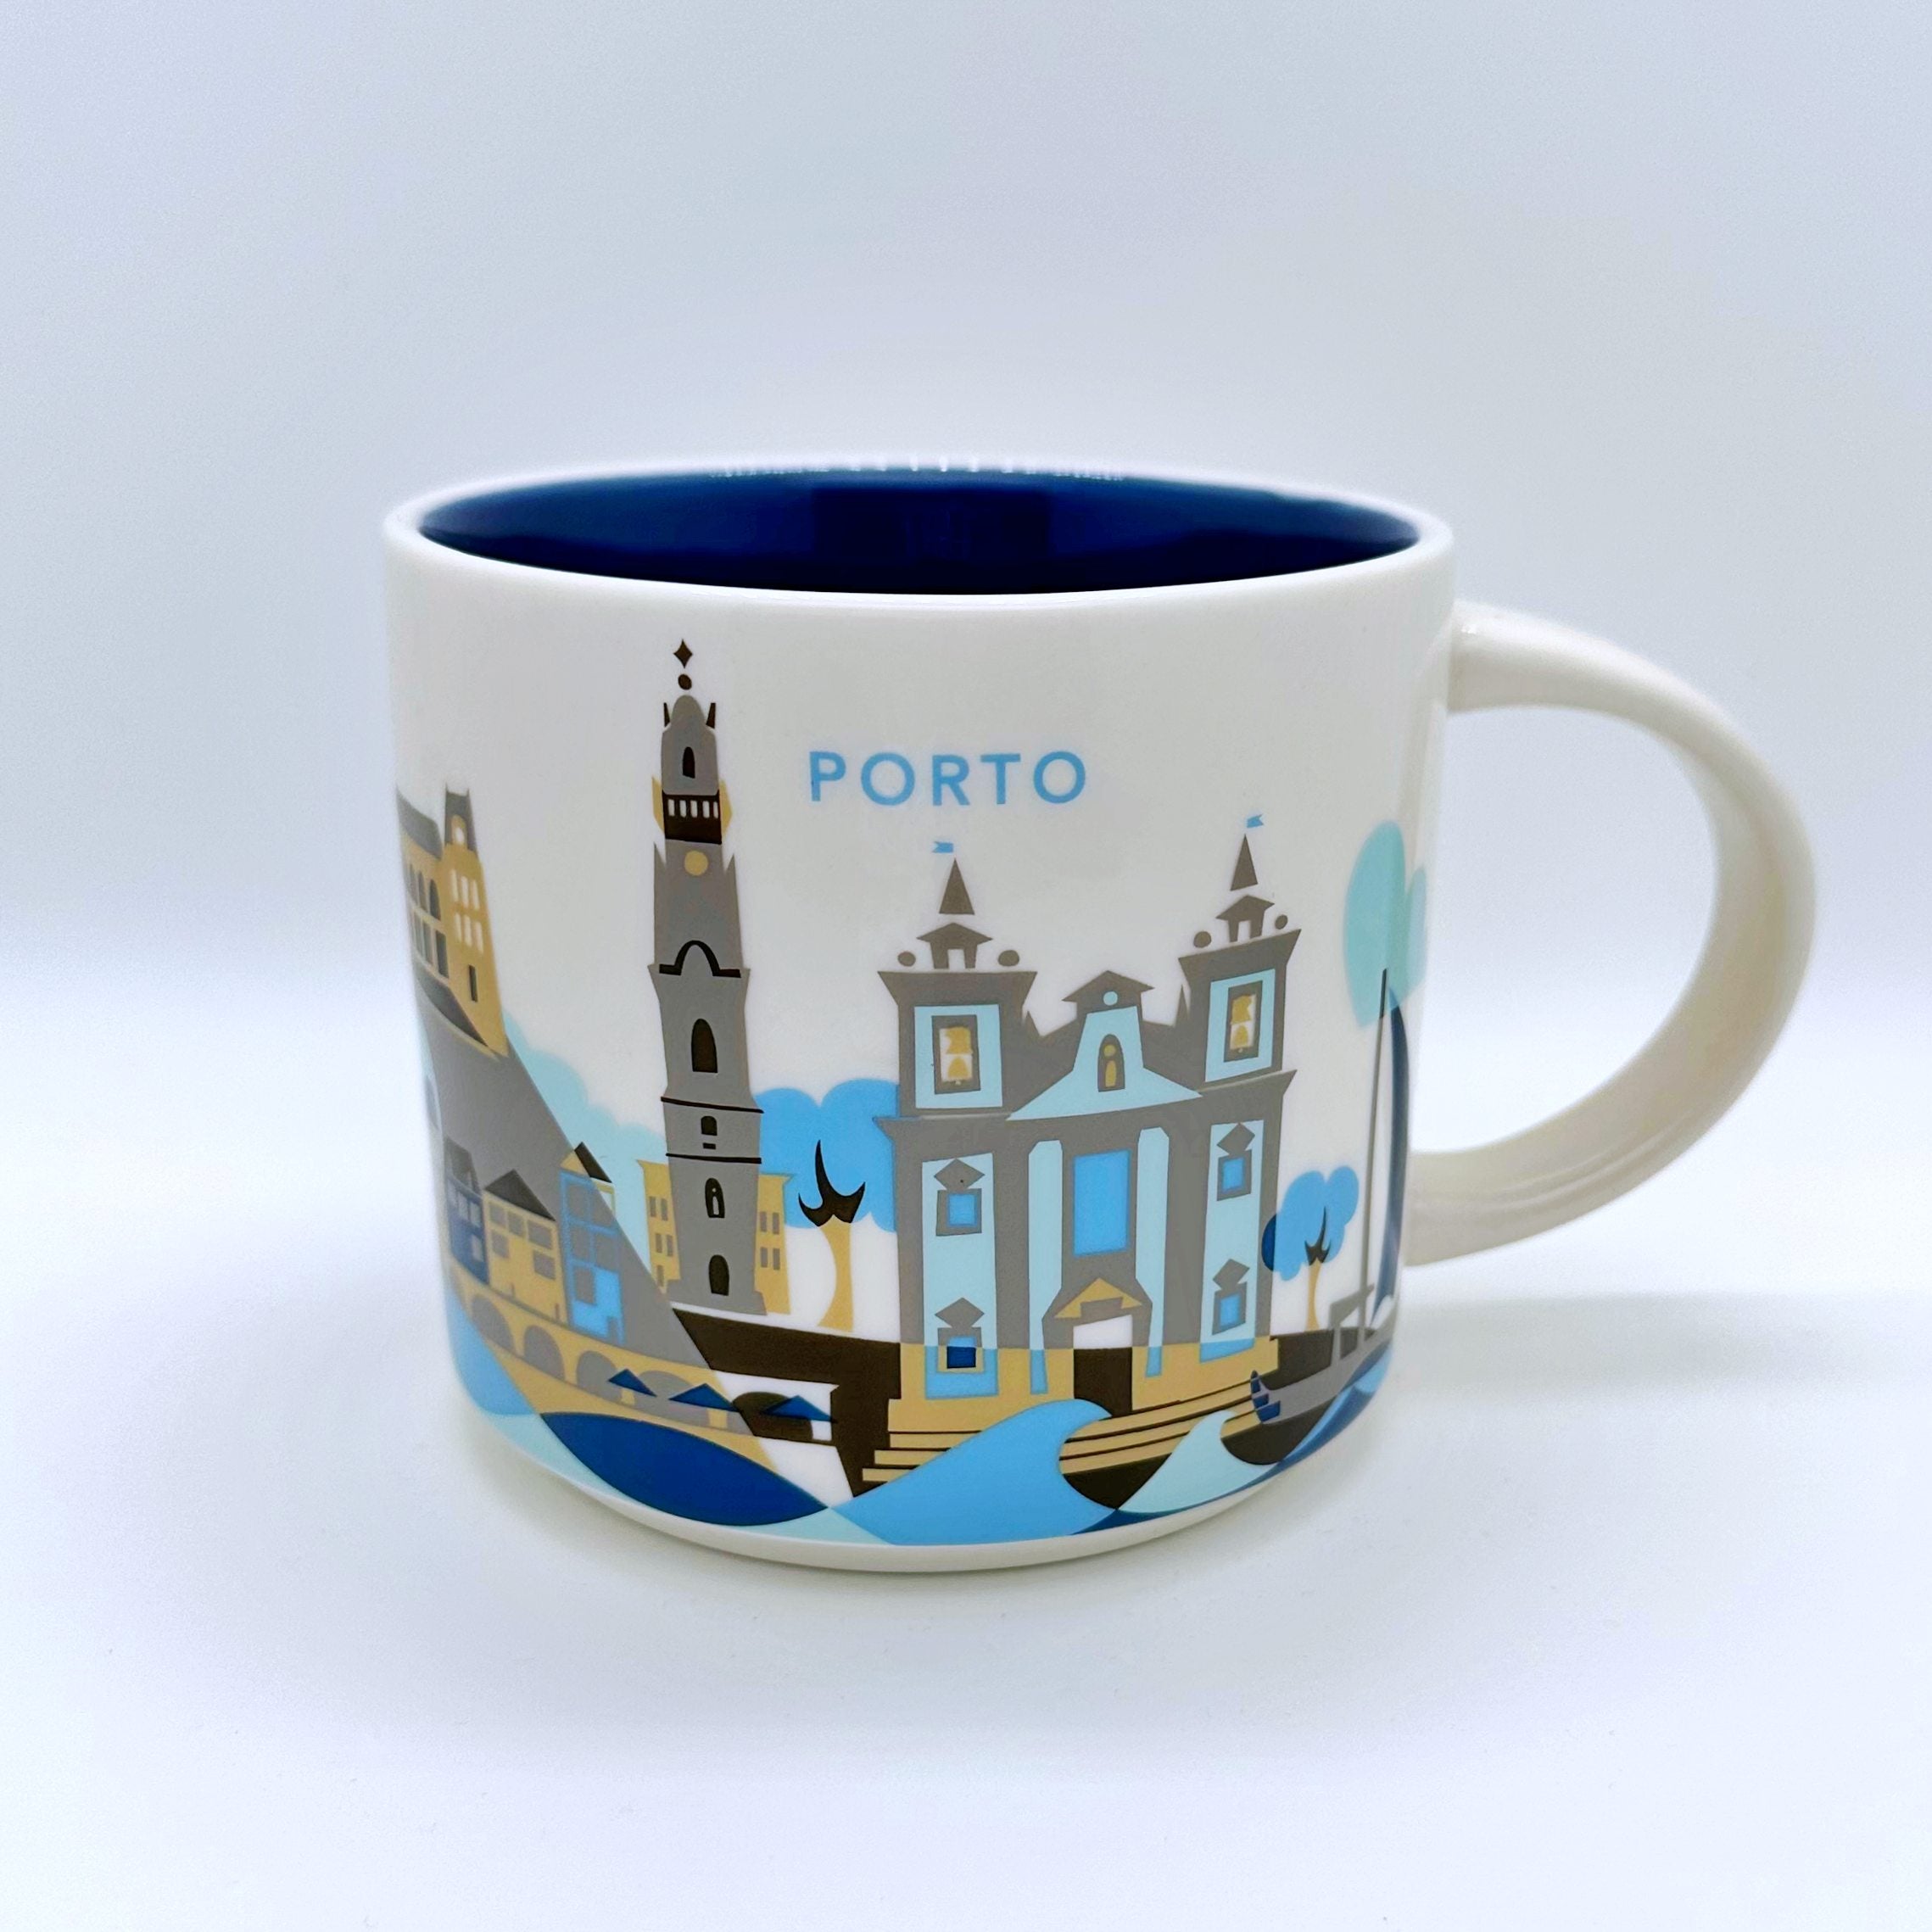 Kaffee Tee und Cappuccino Tasse von Starbucks mit gemalten Bildern aus der Stadt Porto